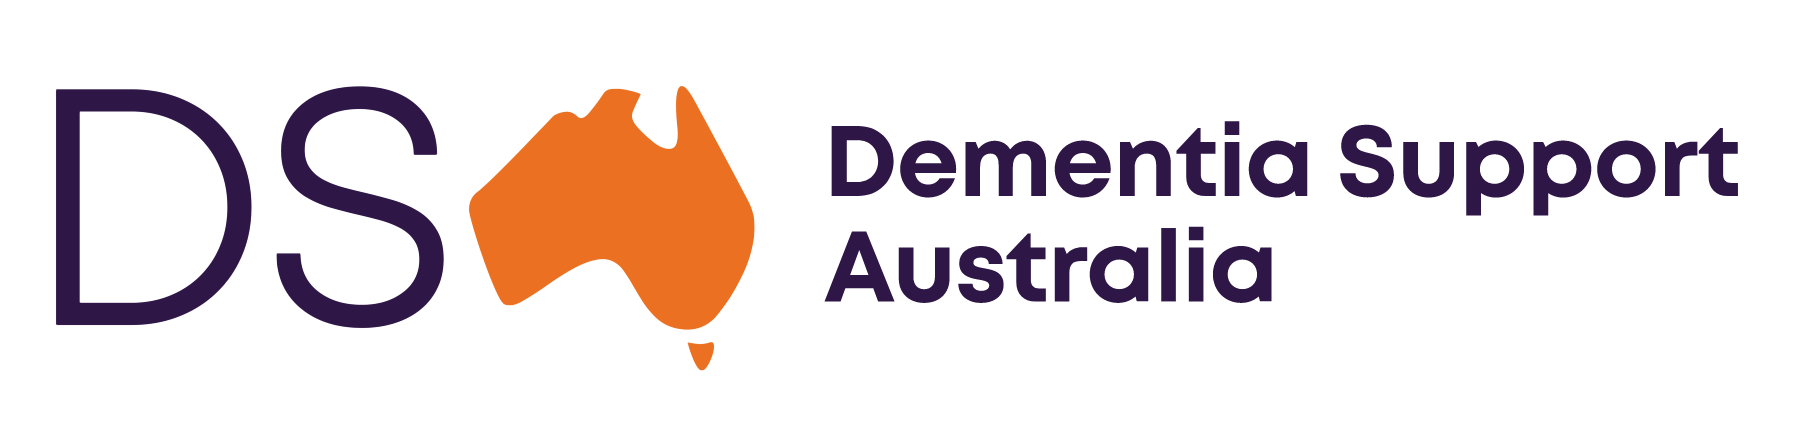 Dementia Support Australia logo